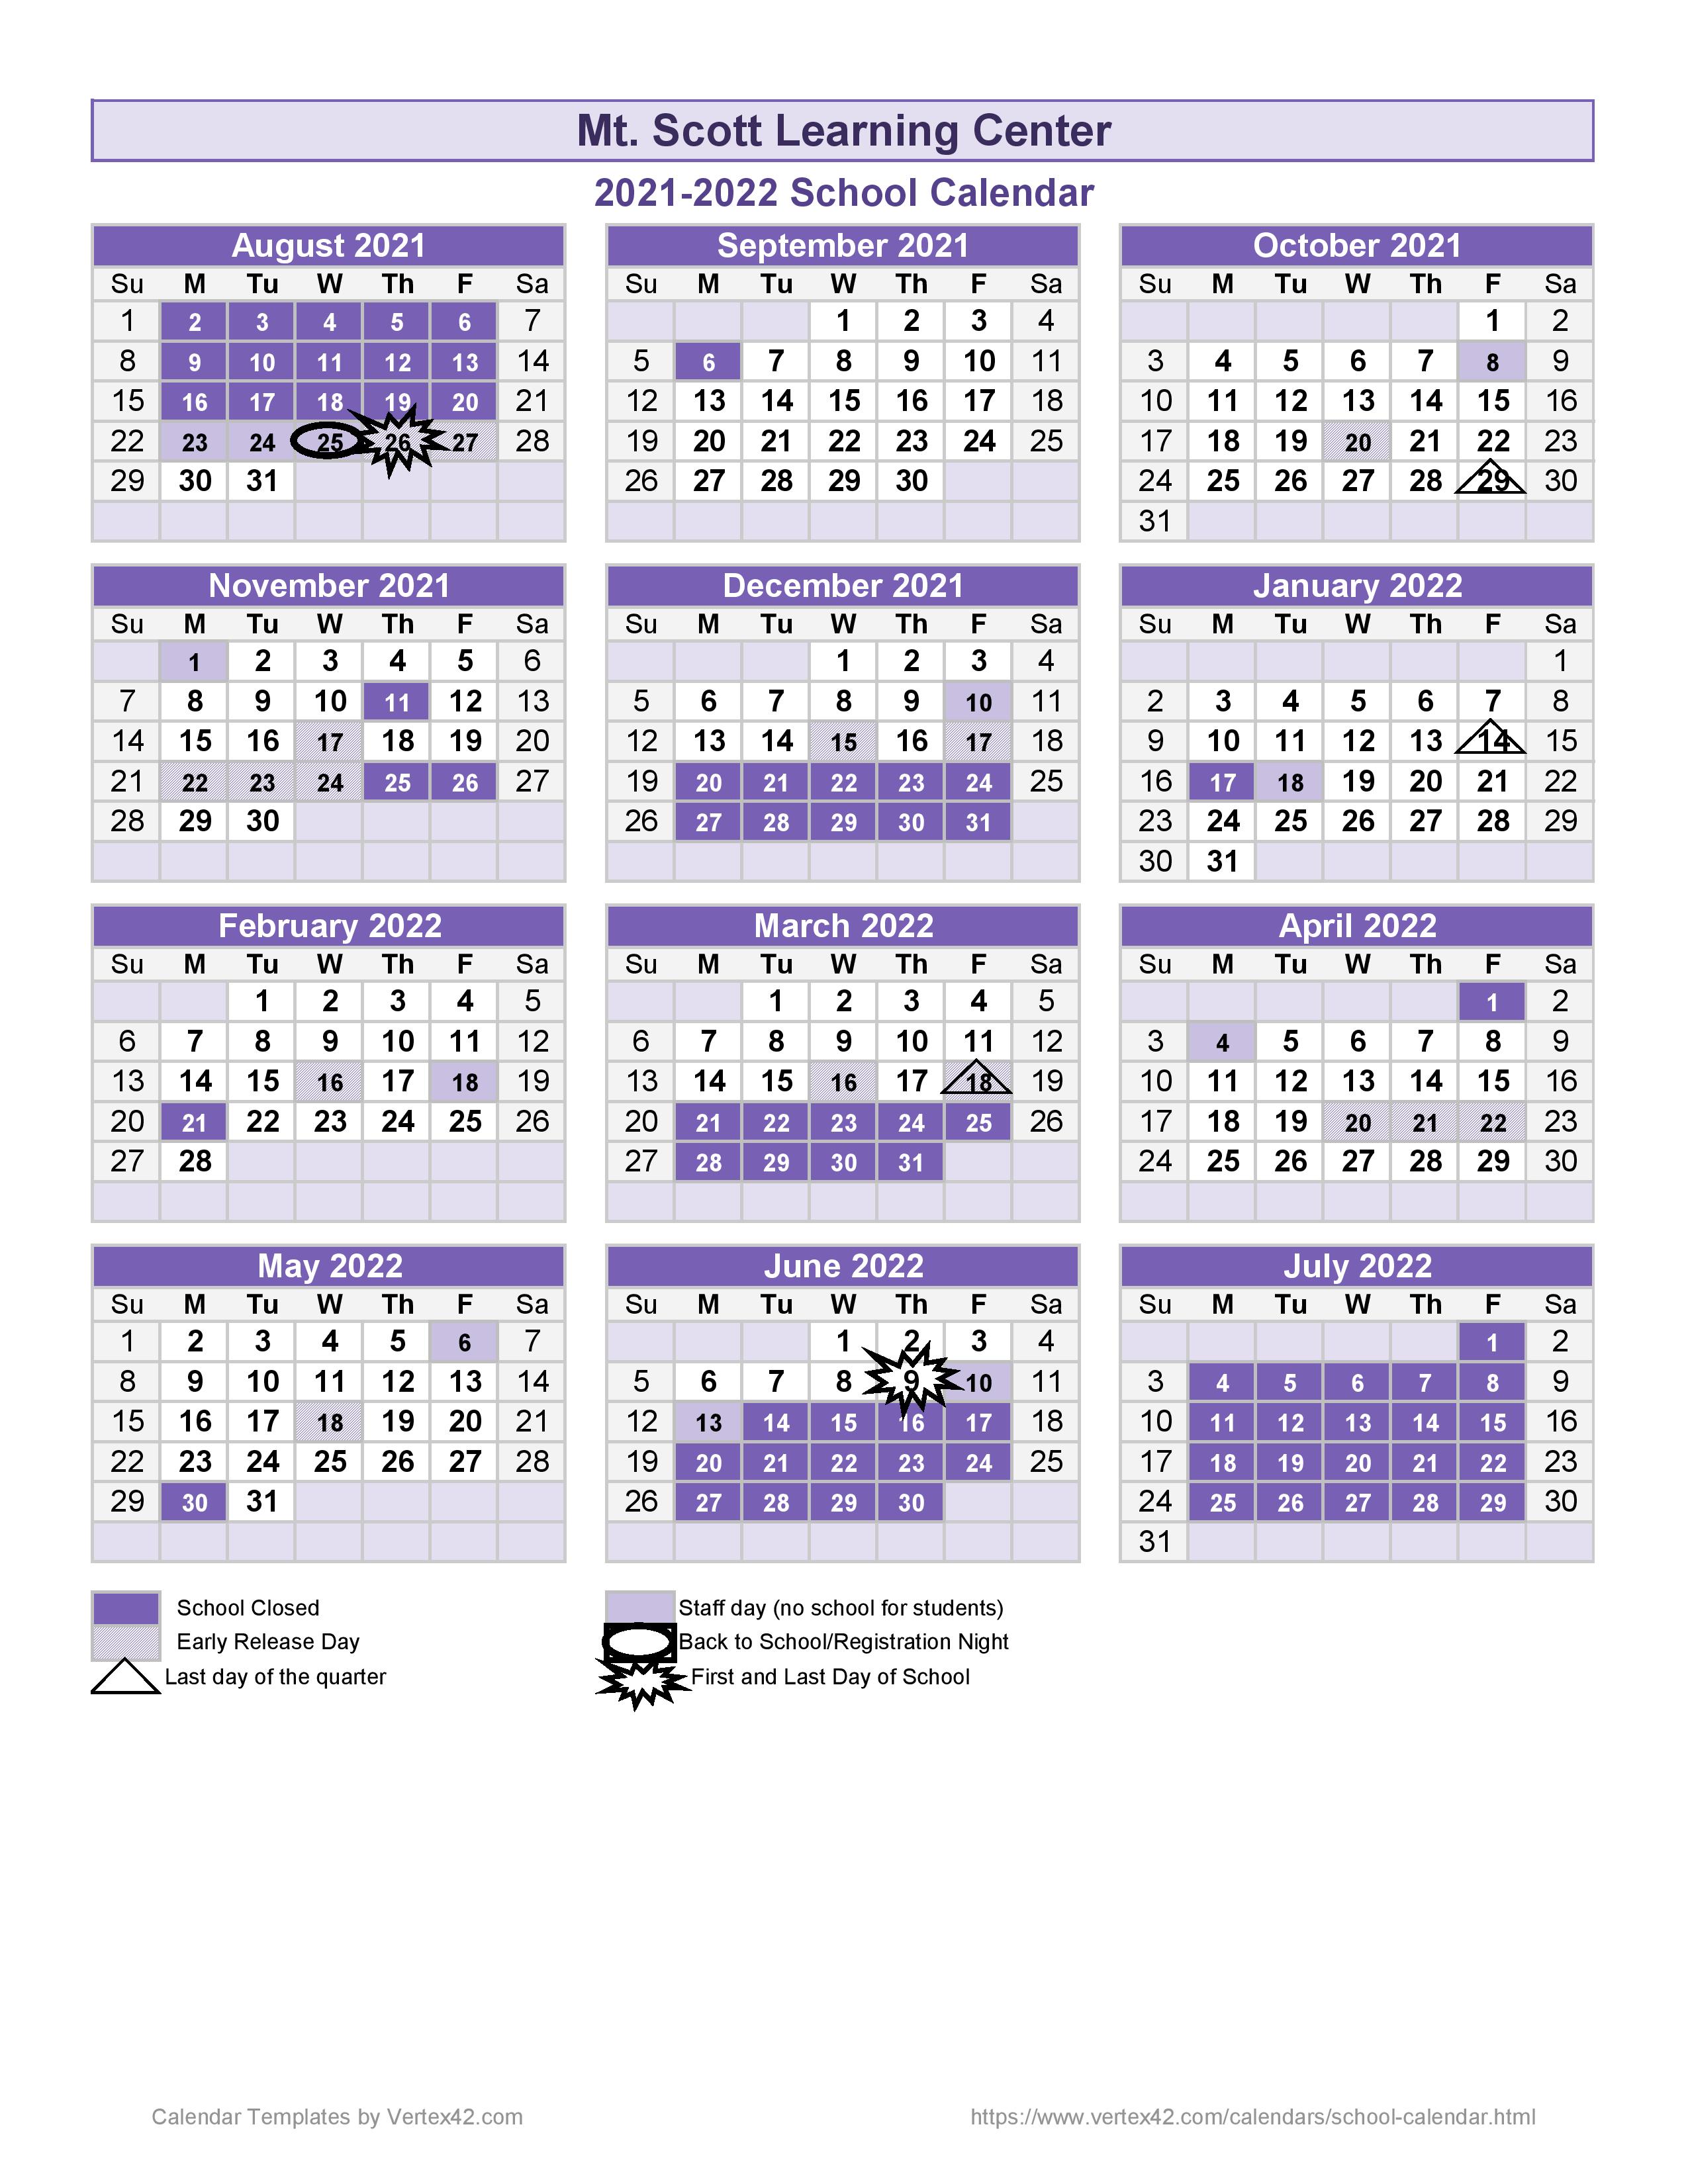 Academic Calendar Mt Scott Learning Center